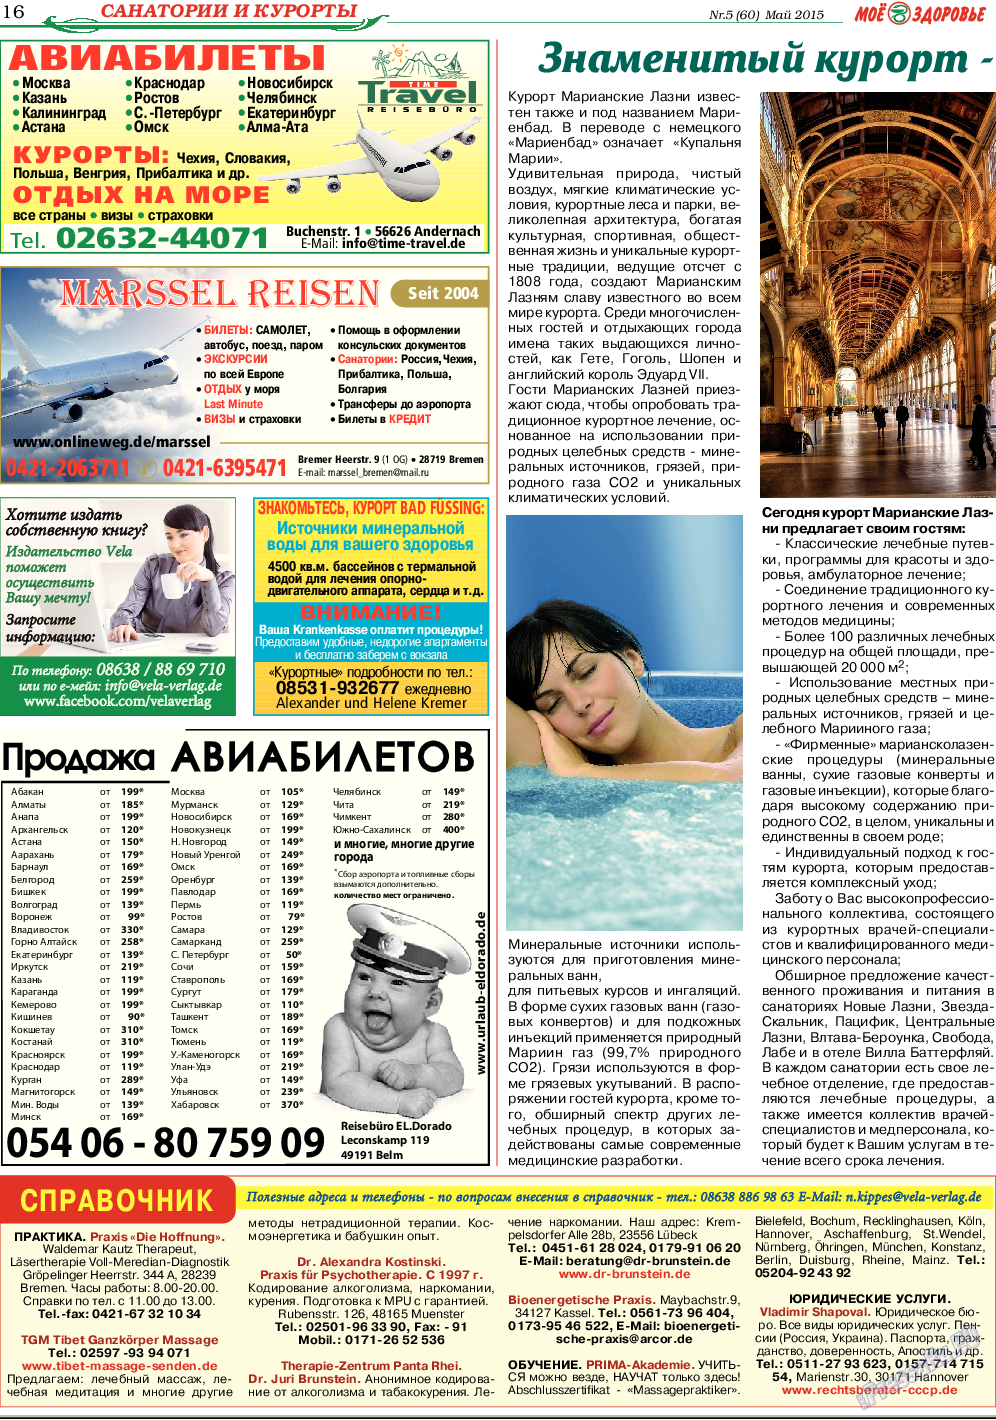 Кругозор (газета). 2015 год, номер 5, стр. 16